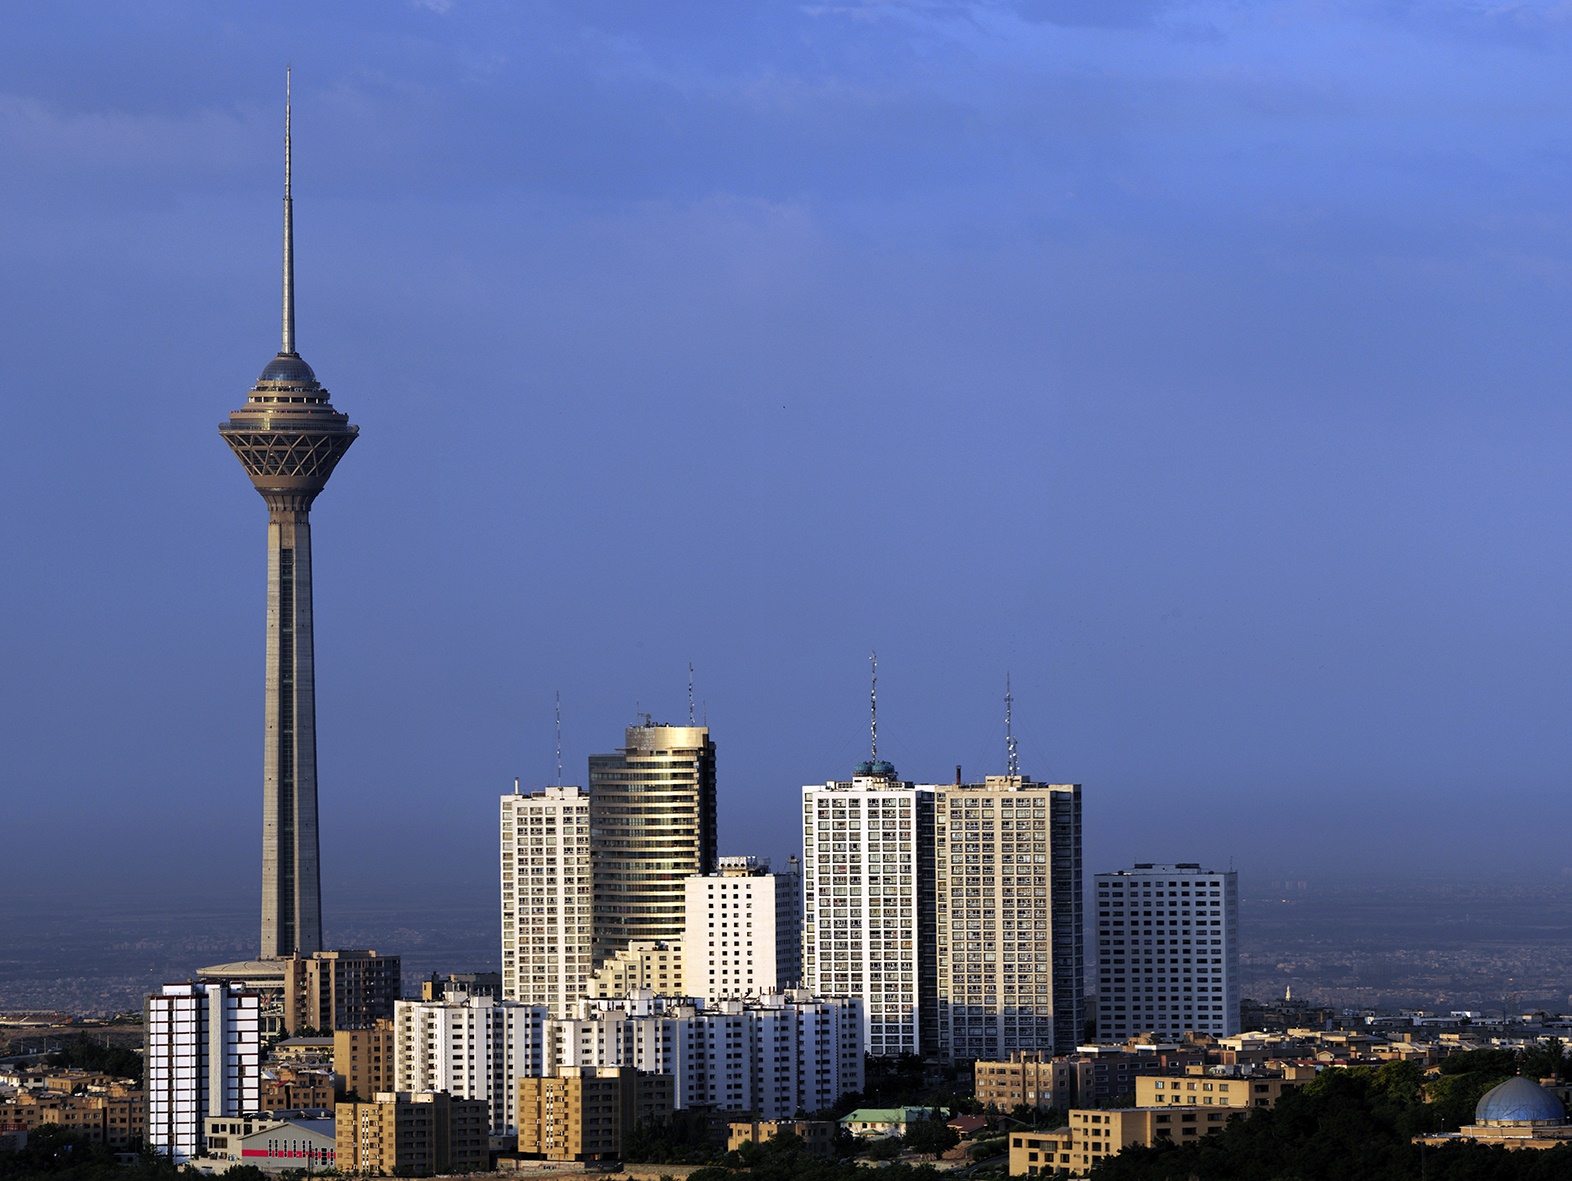 عکس هایی از بالا شهر تهران